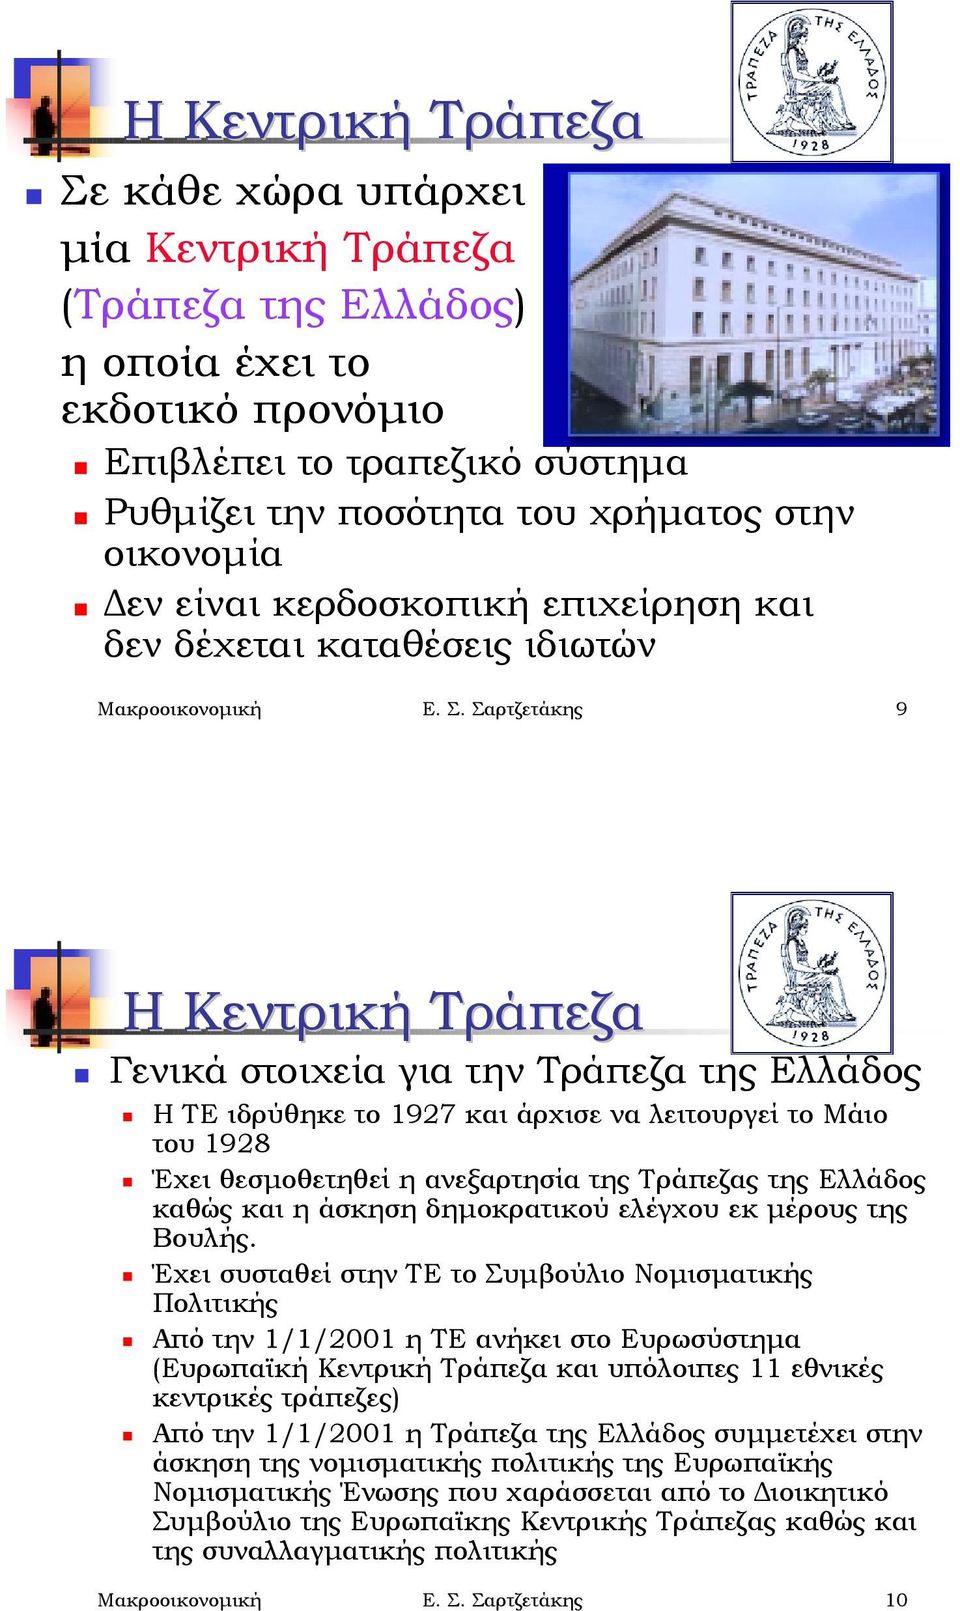 Γενικά στοιχεία για την Τράπεζα της Ελλάδος! Η ΤΕ ιδρύθηκε το 1927 και άρχισε να λειτουργεί το Μάιο του 1928!